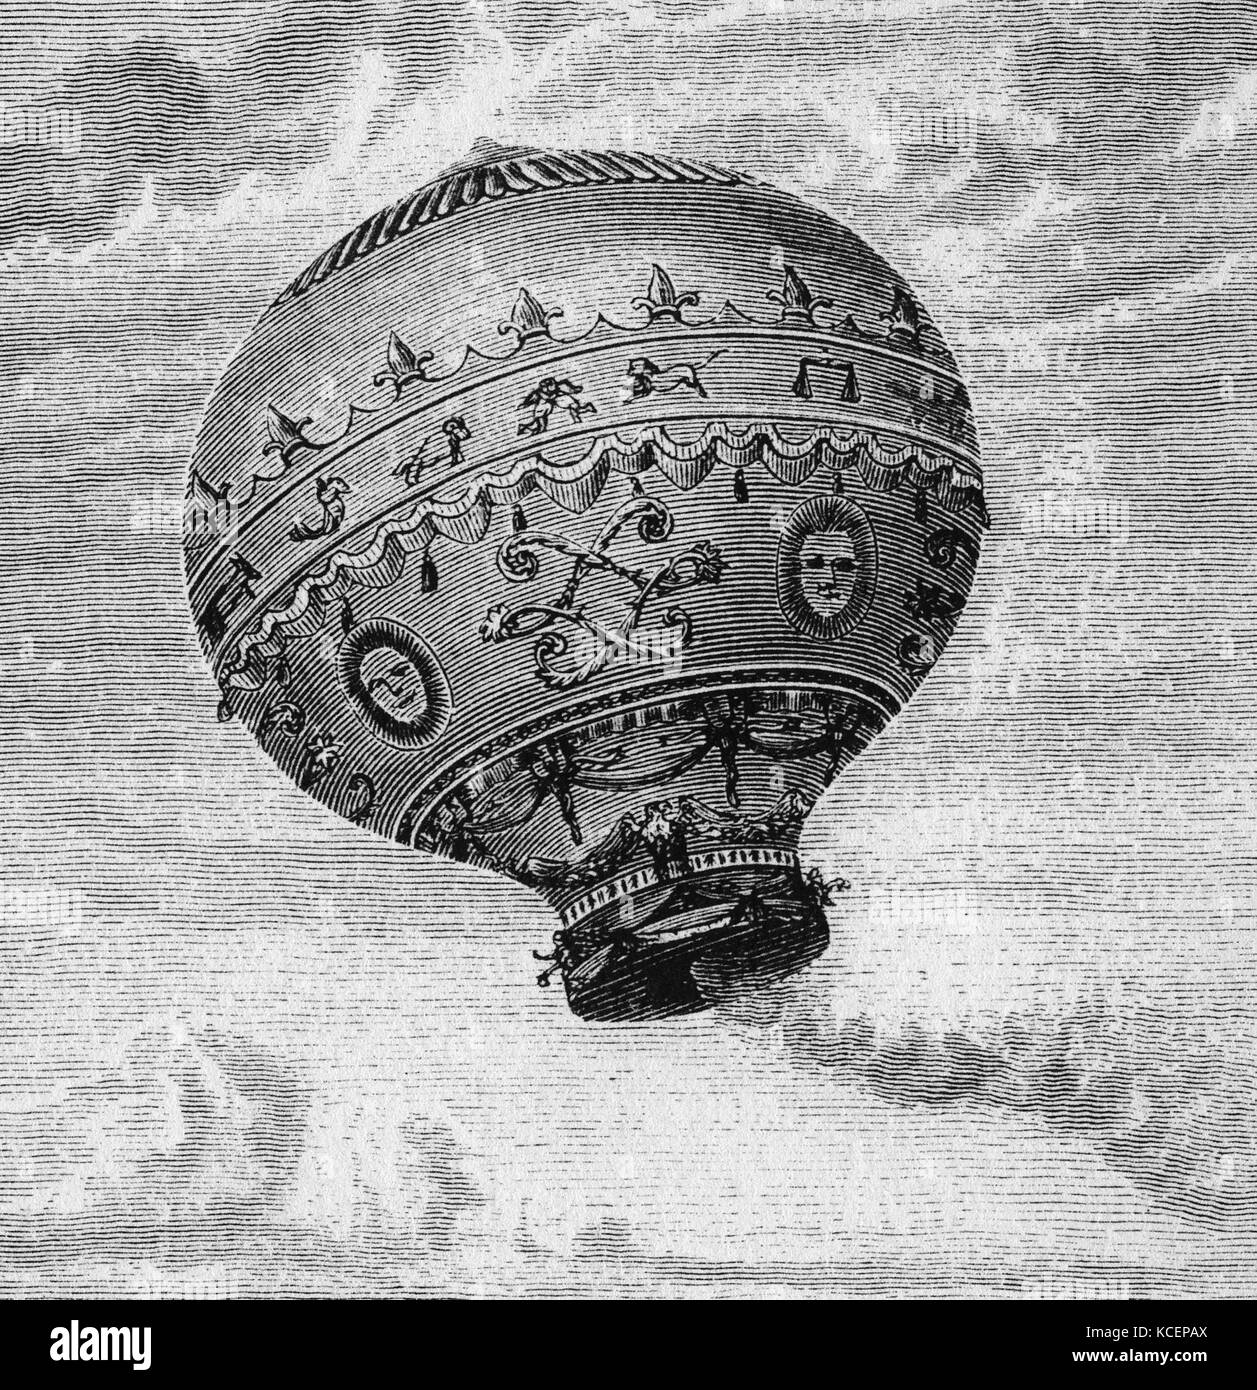 Incisione su rame del palloncino di idrogeno progettato dai fratelli Montgolfier. Joseph-Michel Montgolfier (1740-1810) e Jacques-Étienne Montgolfier (1745-1799) inventori del Montgolfier-stile mongolfiera, globe aérostatique. Datata xviii secolo Foto Stock